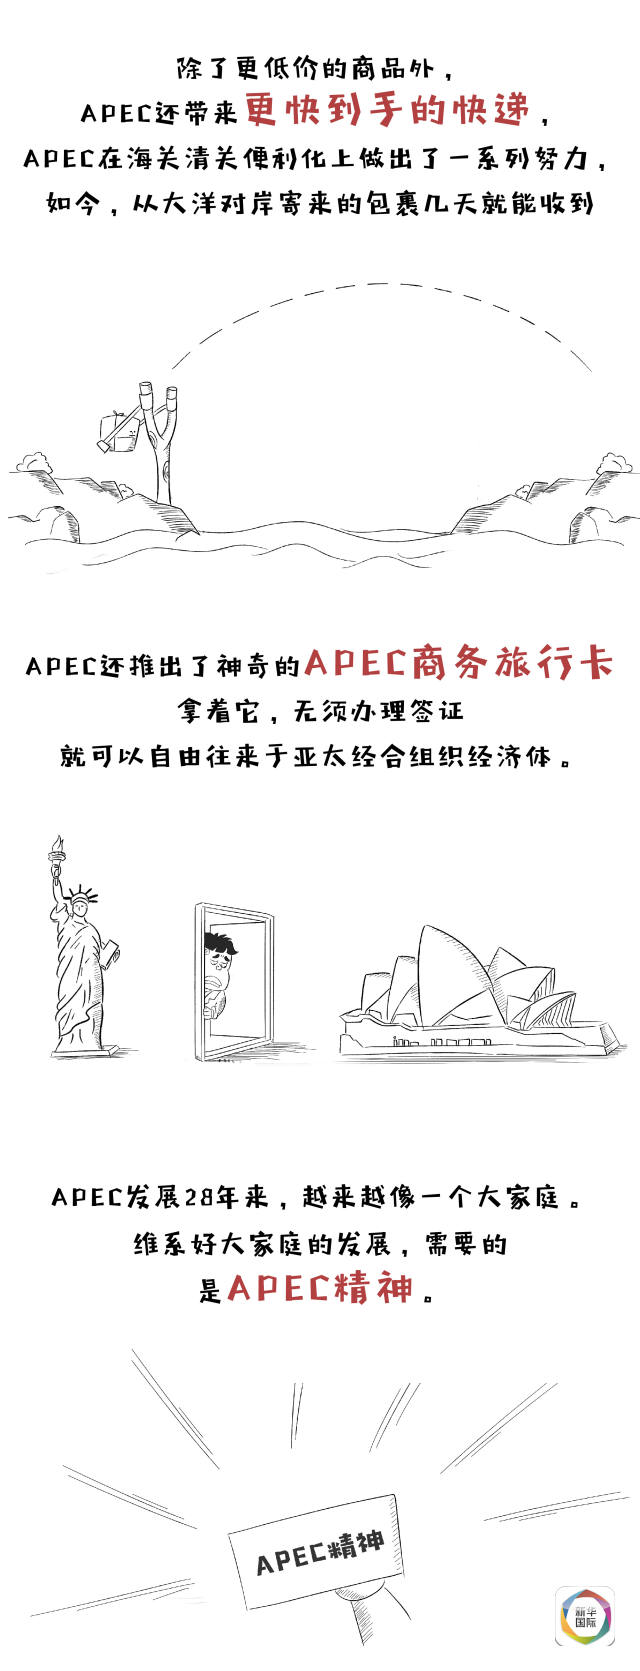 一图读懂APEC和你我生活啥关系